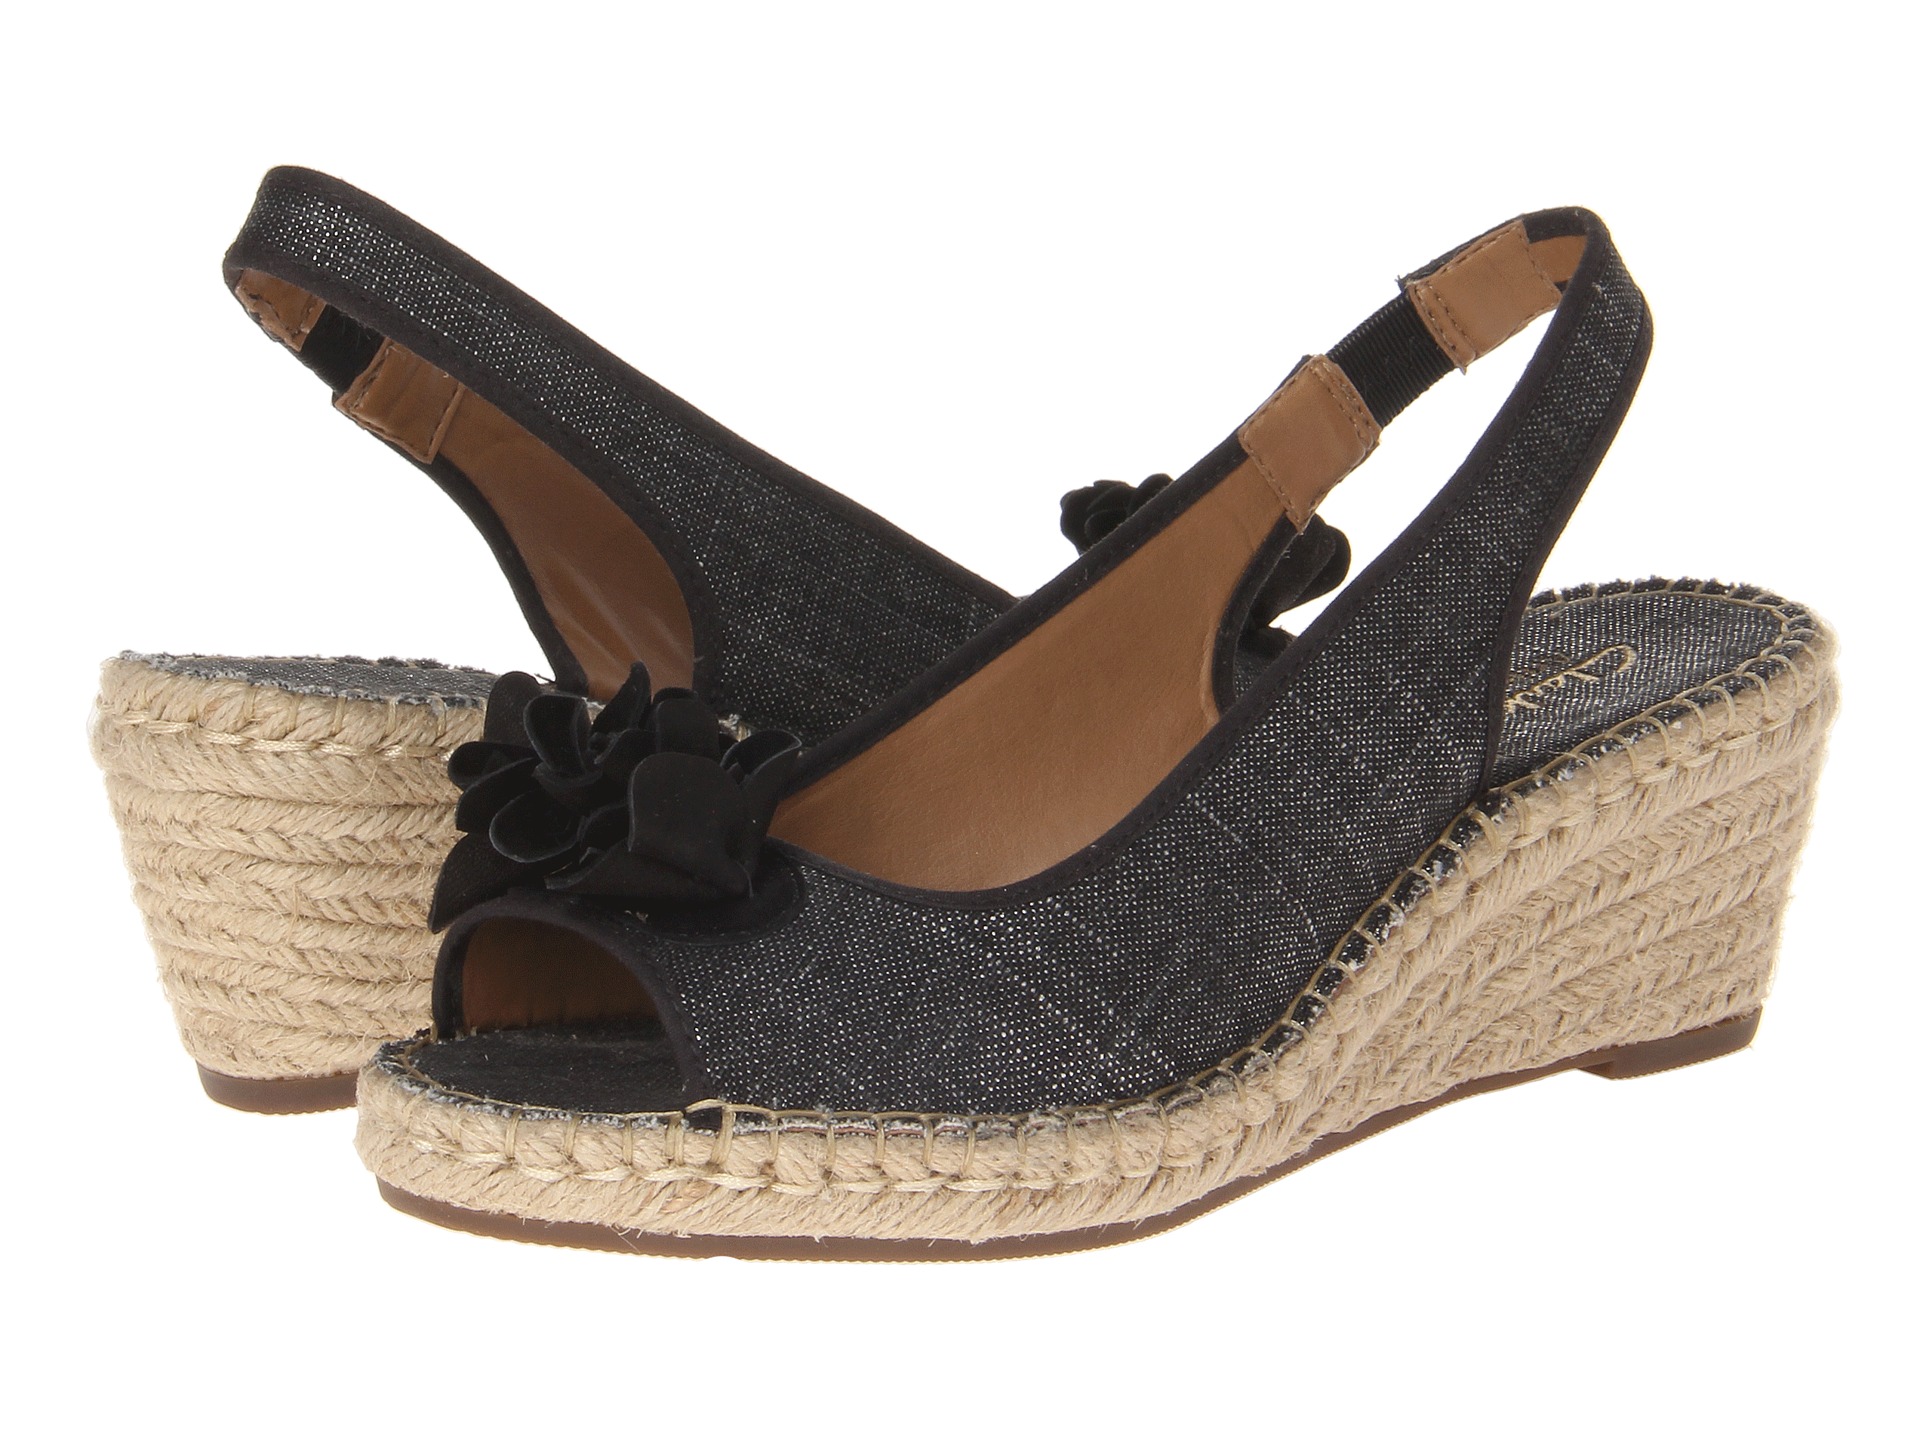 Aerosole Sandals: Clarks Artisan Sandals Zappos